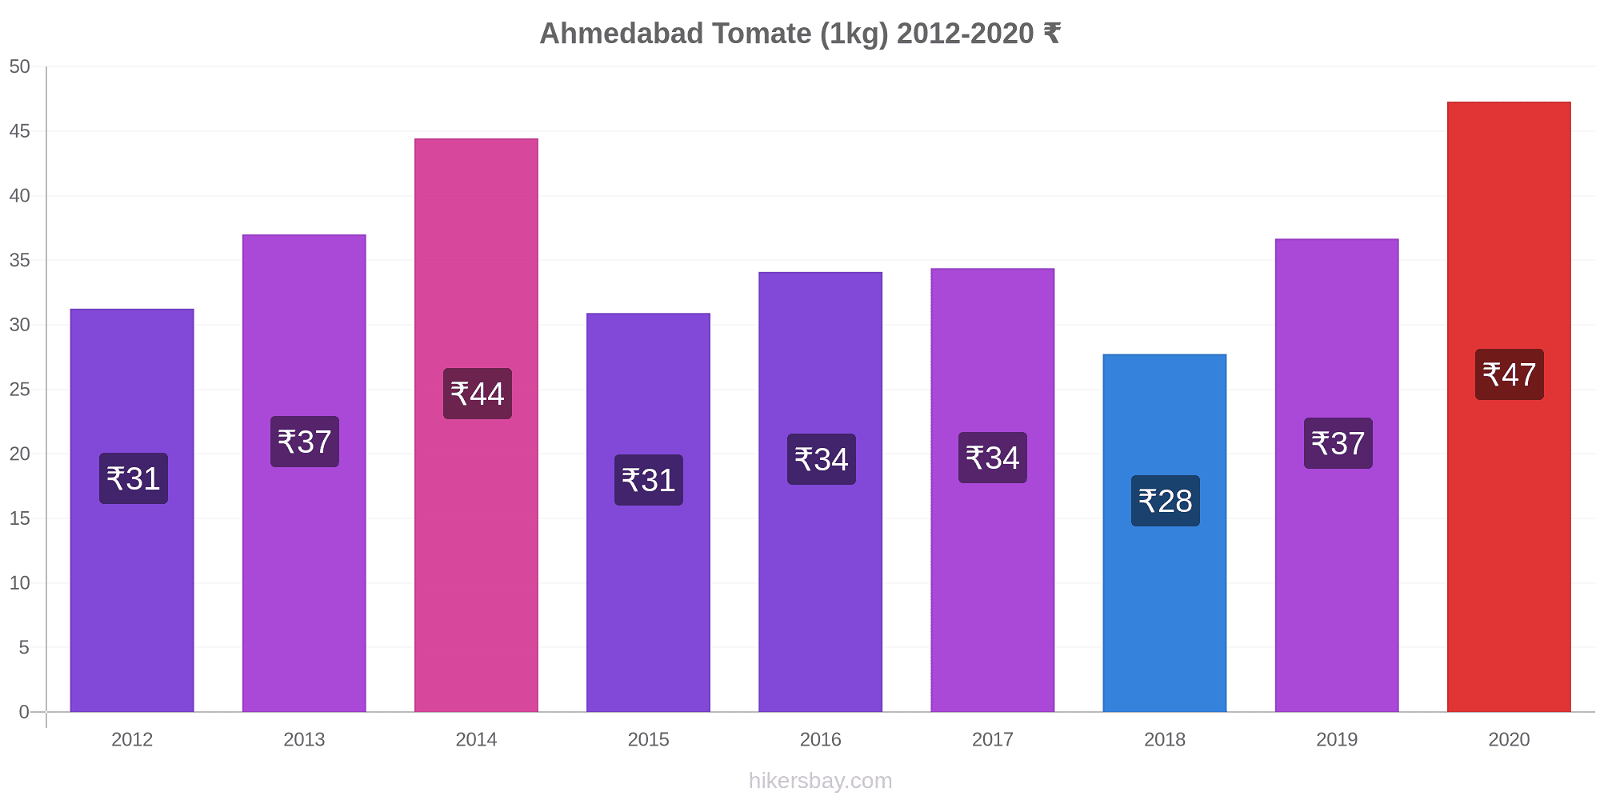 Ahmedabad cambios de precios Tomate (1kg) hikersbay.com